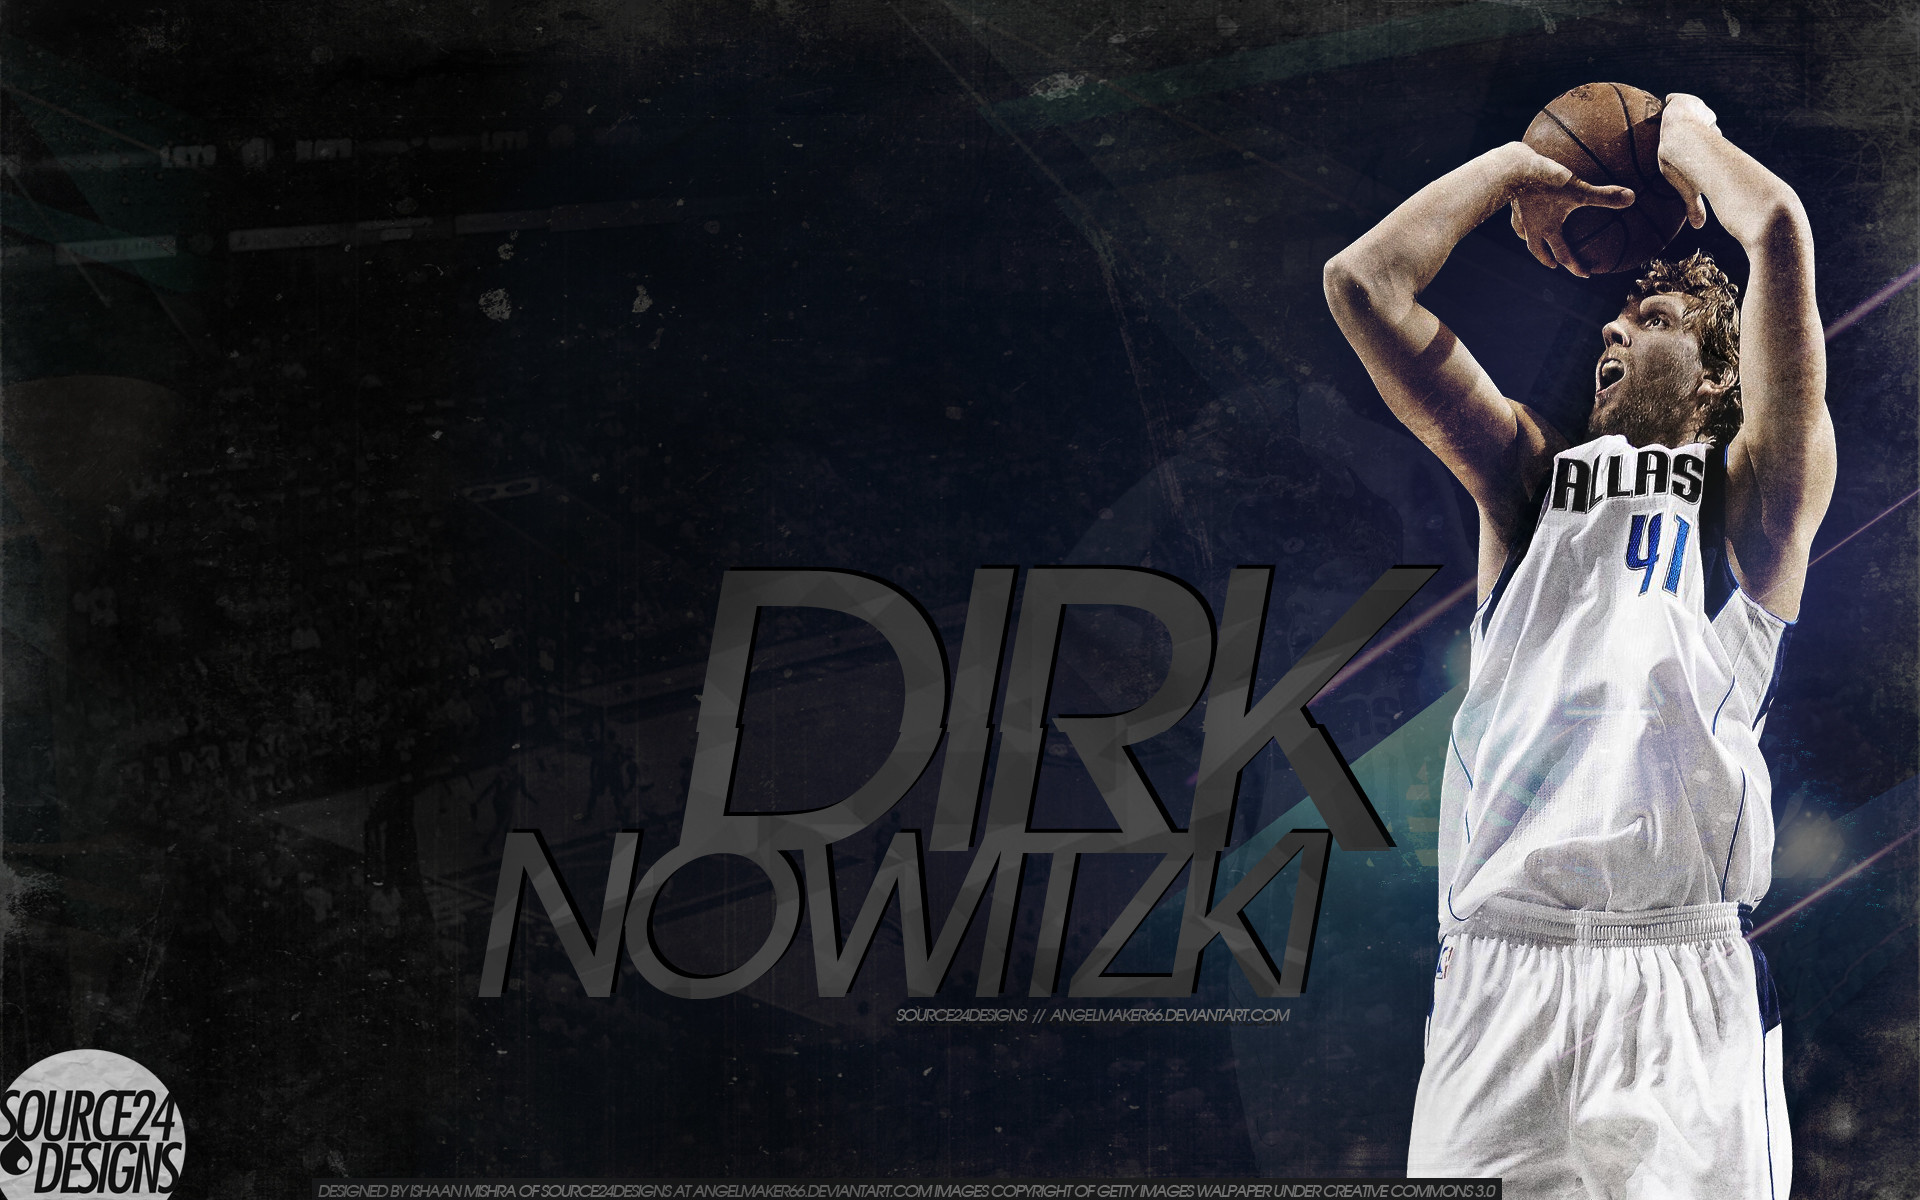 Dirk Nowitzki Wallpapers - Top Free Dirk Nowitzki Backgrounds ...